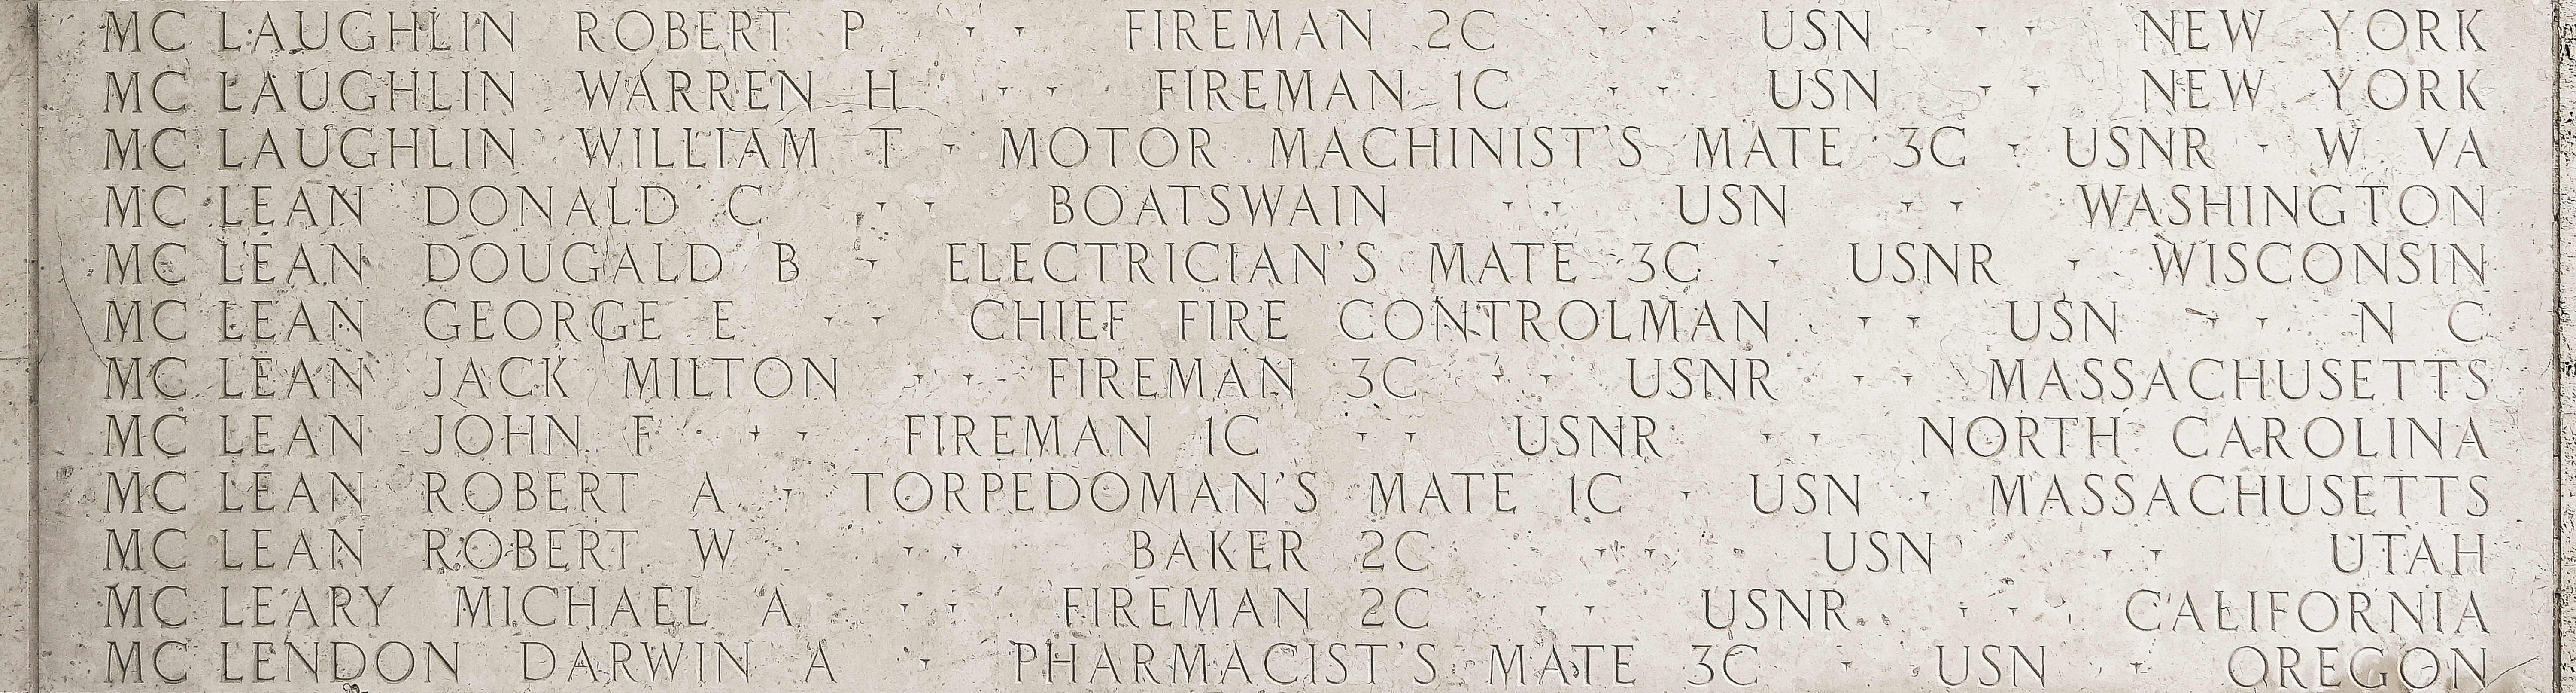 John F. McLean, Fireman First Class